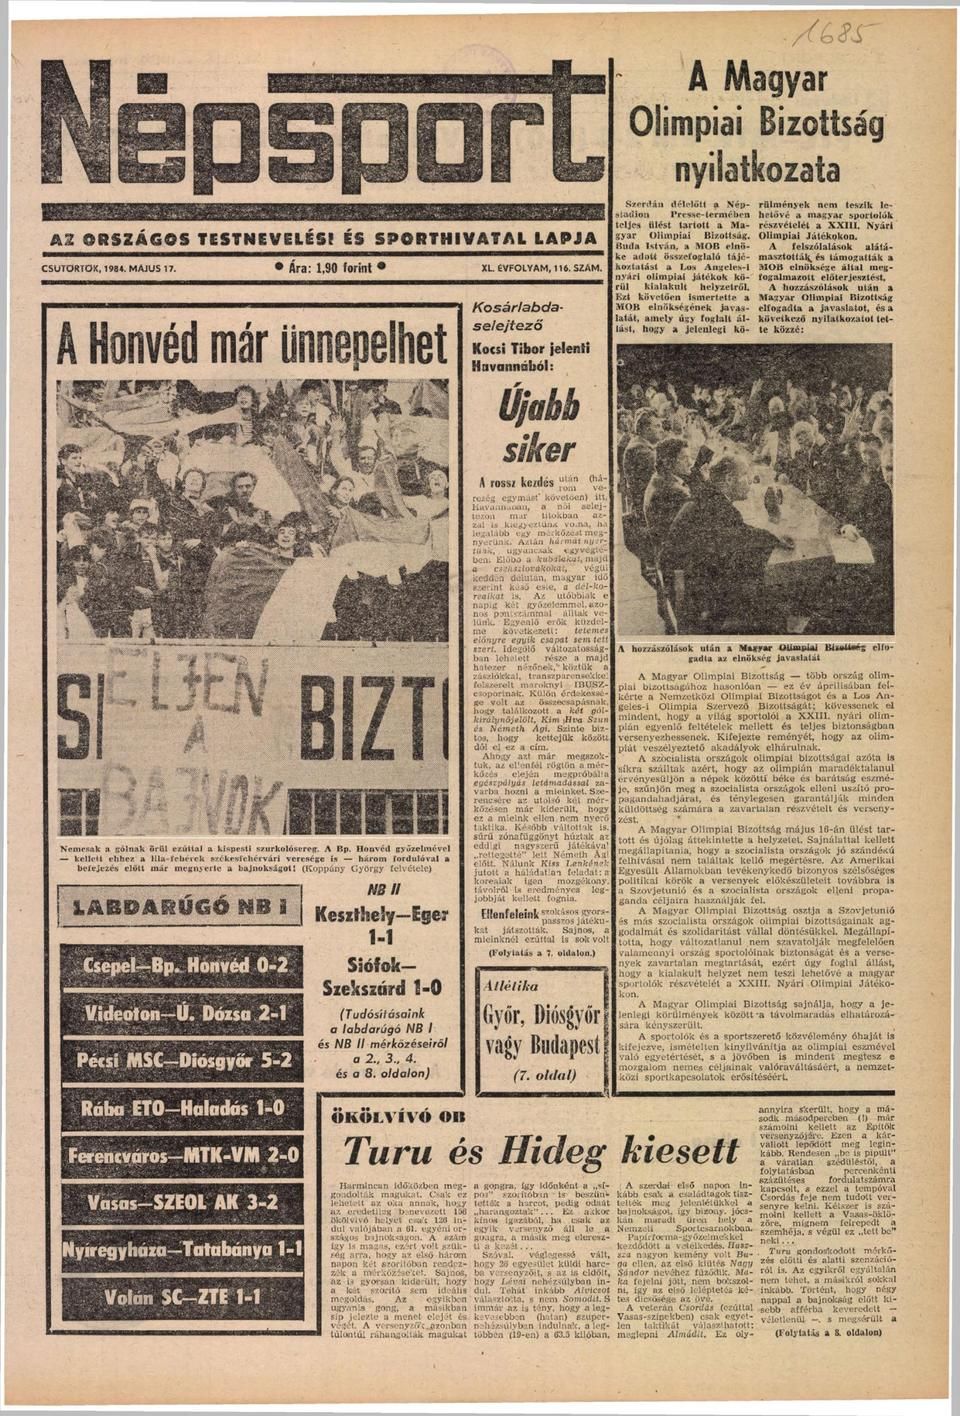 A Népsport 1984. május 17-ei számának címlapján már olvasható volt a MOB nyilatkozata a bojkottról.